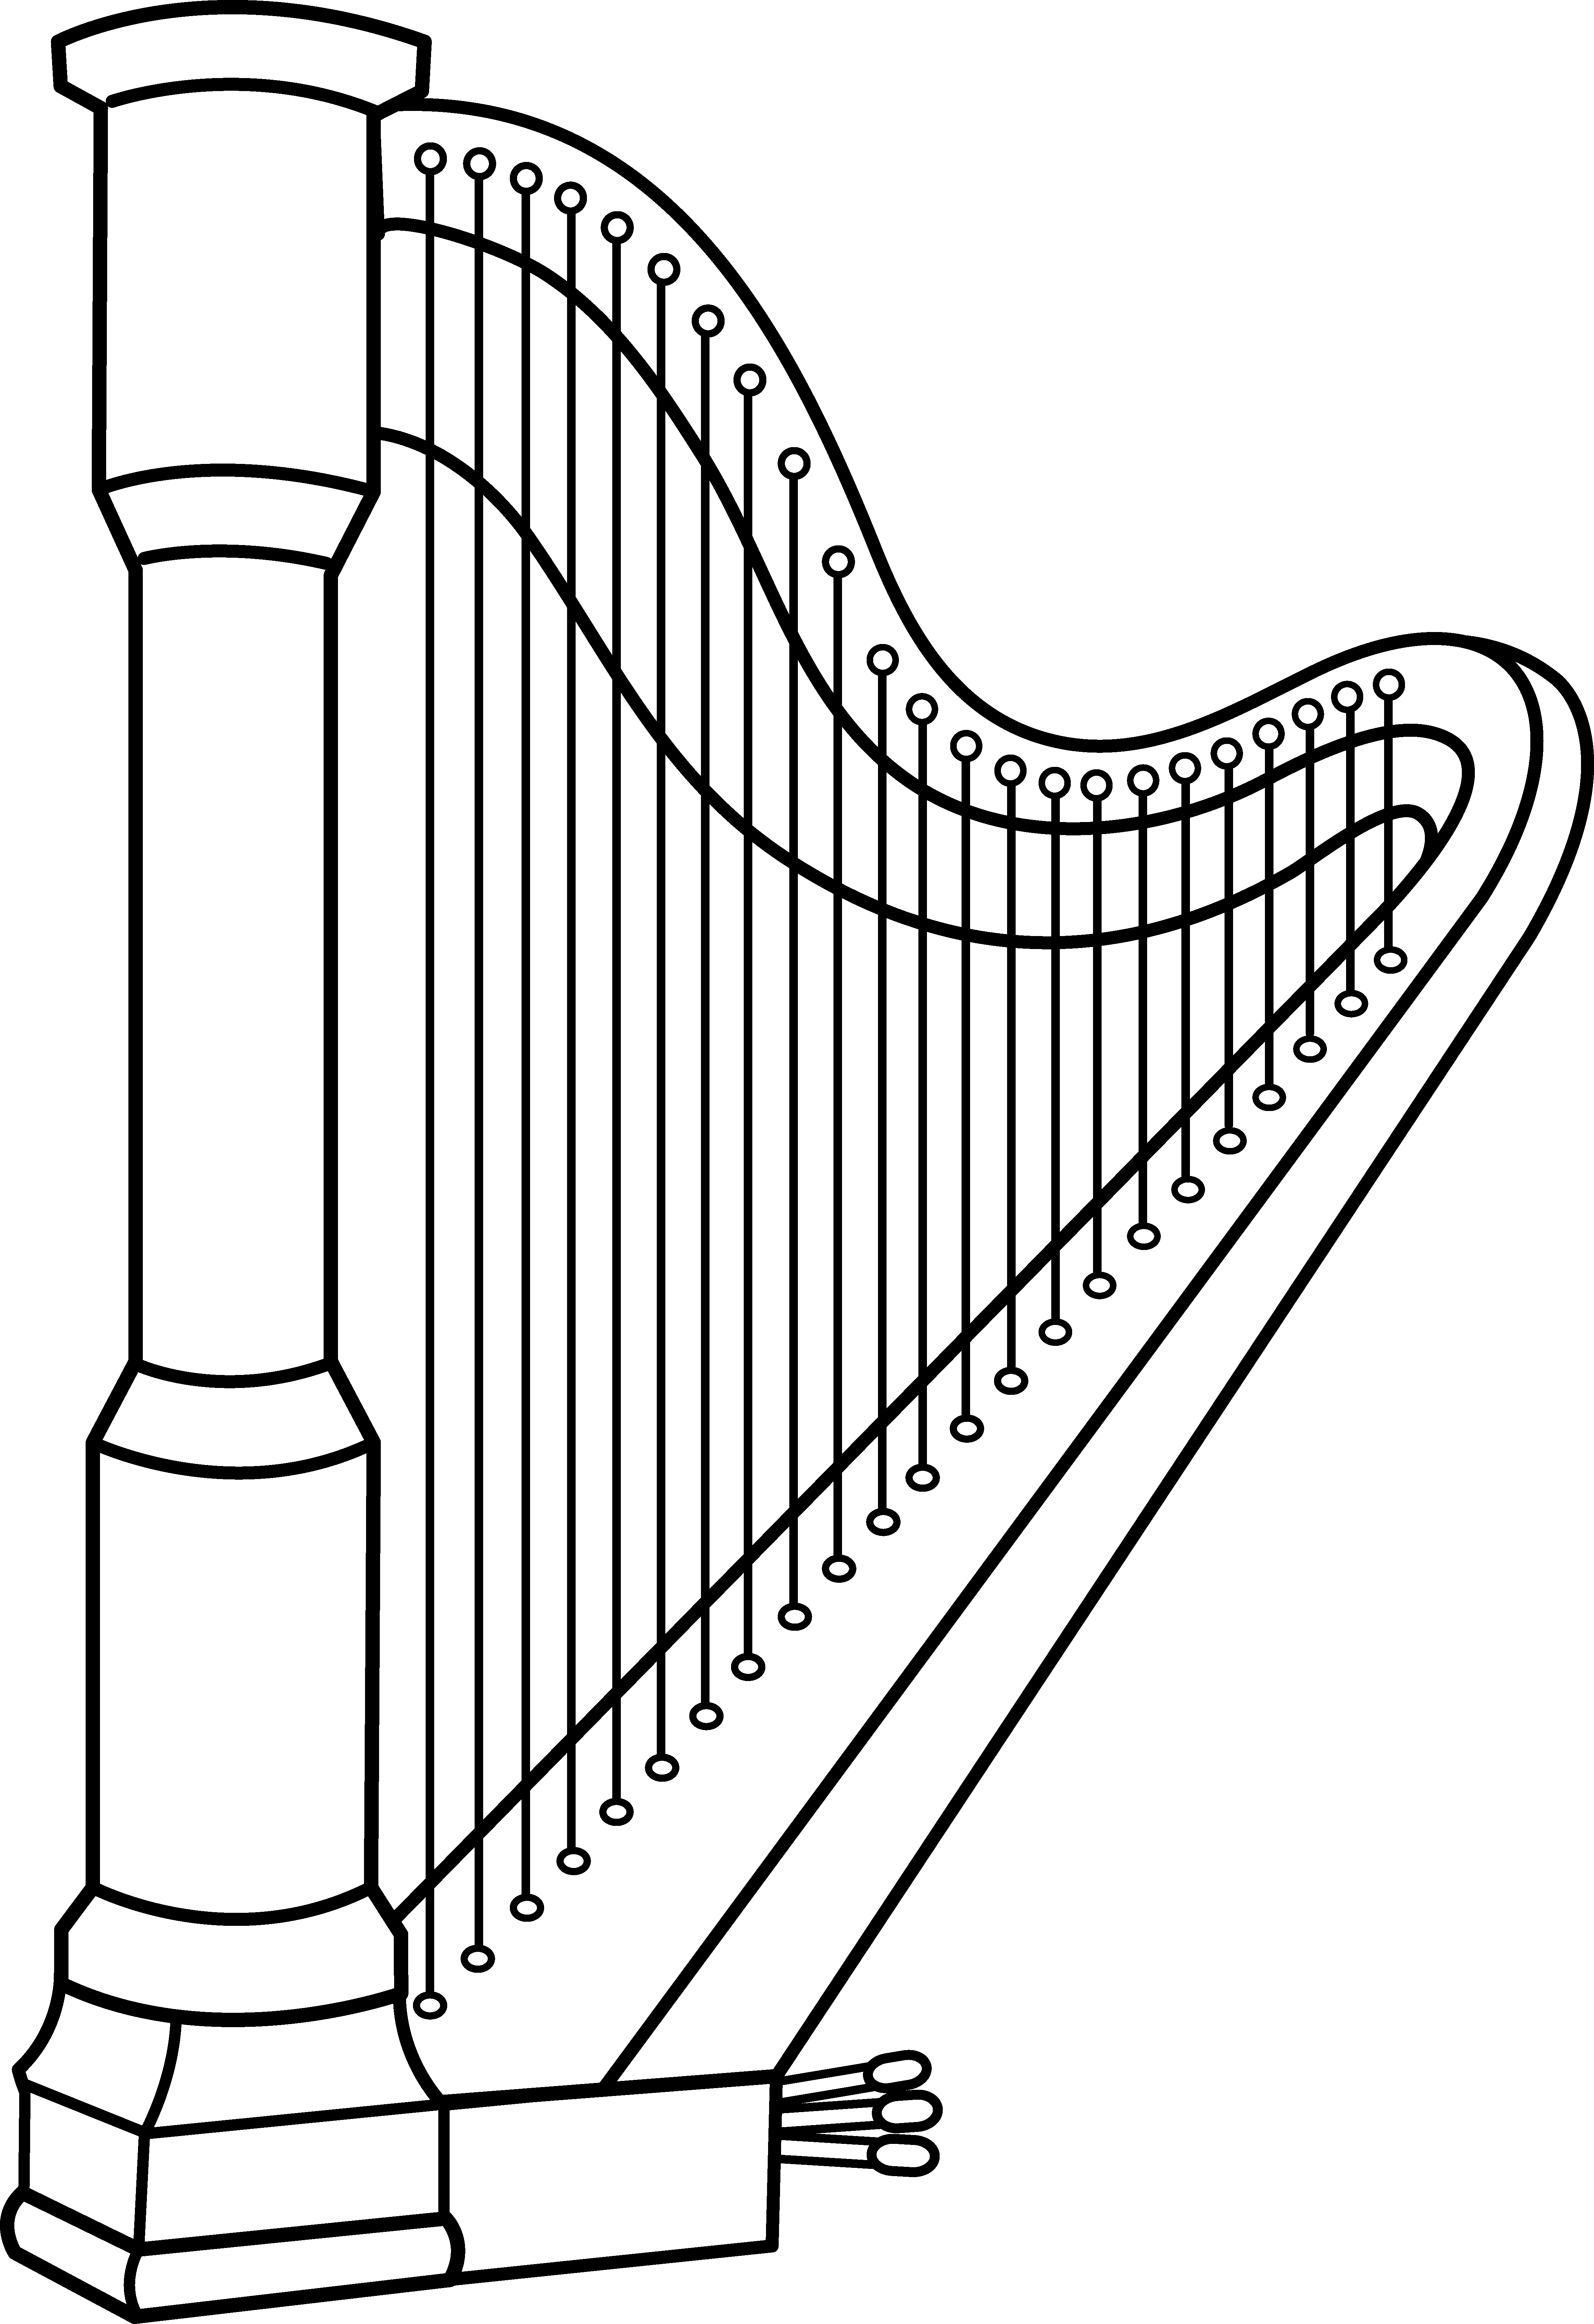 Musical harp line art. Musician clipart preschool music